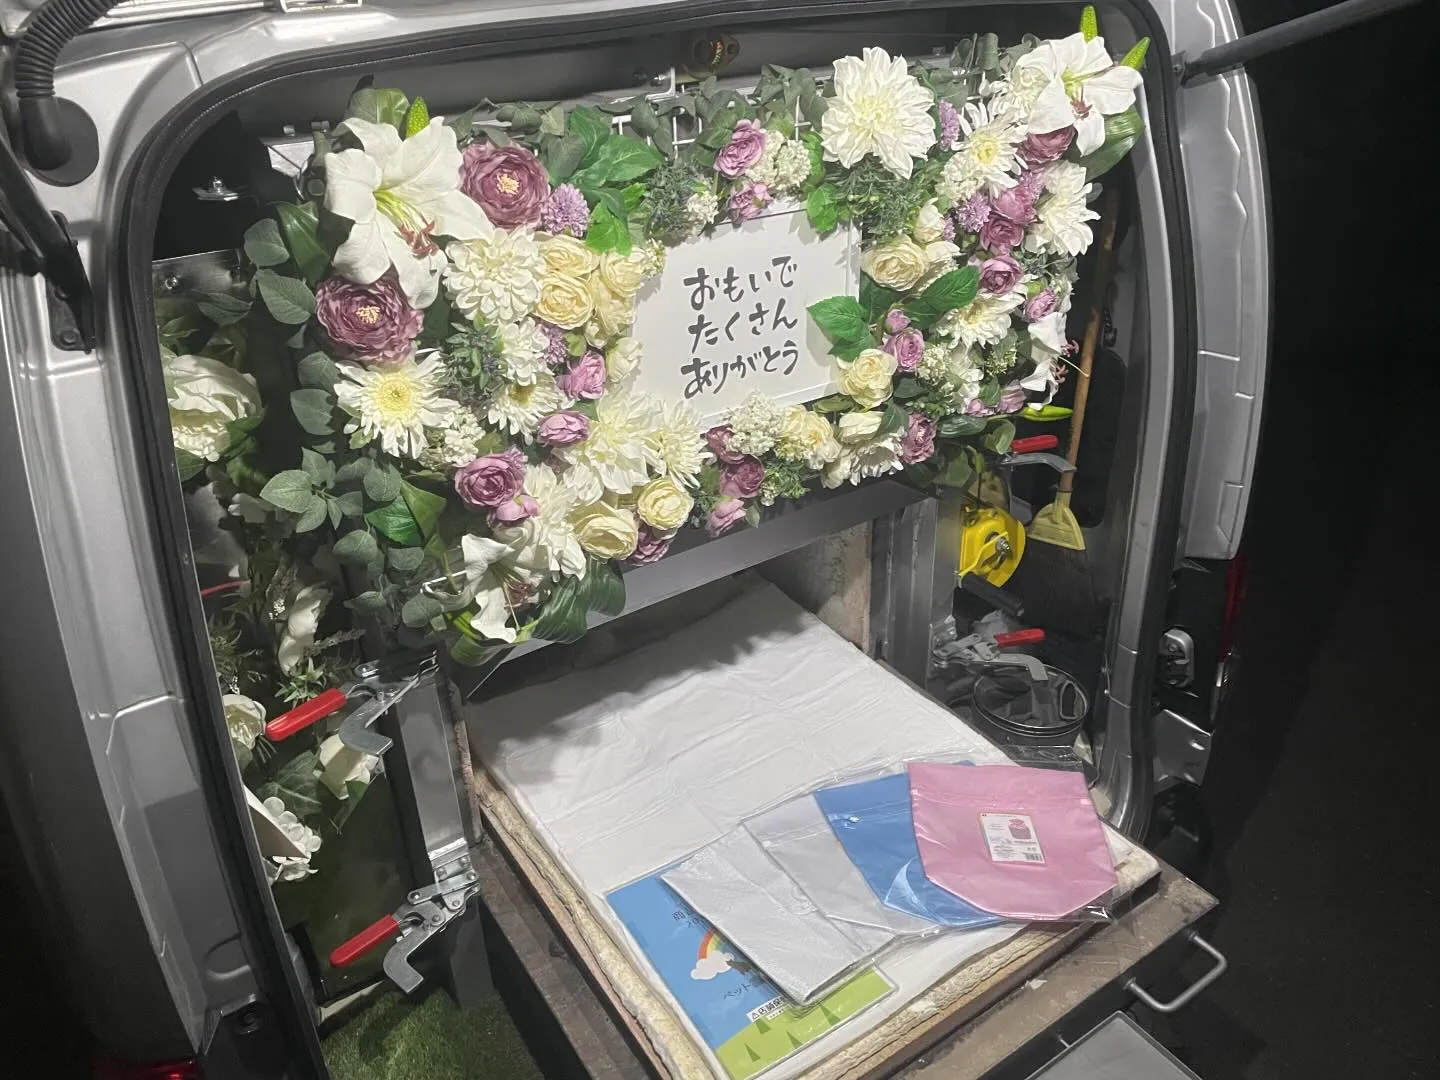 東京都武蔵村山市にてトイプードルちゃんのご火葬に伺いました。